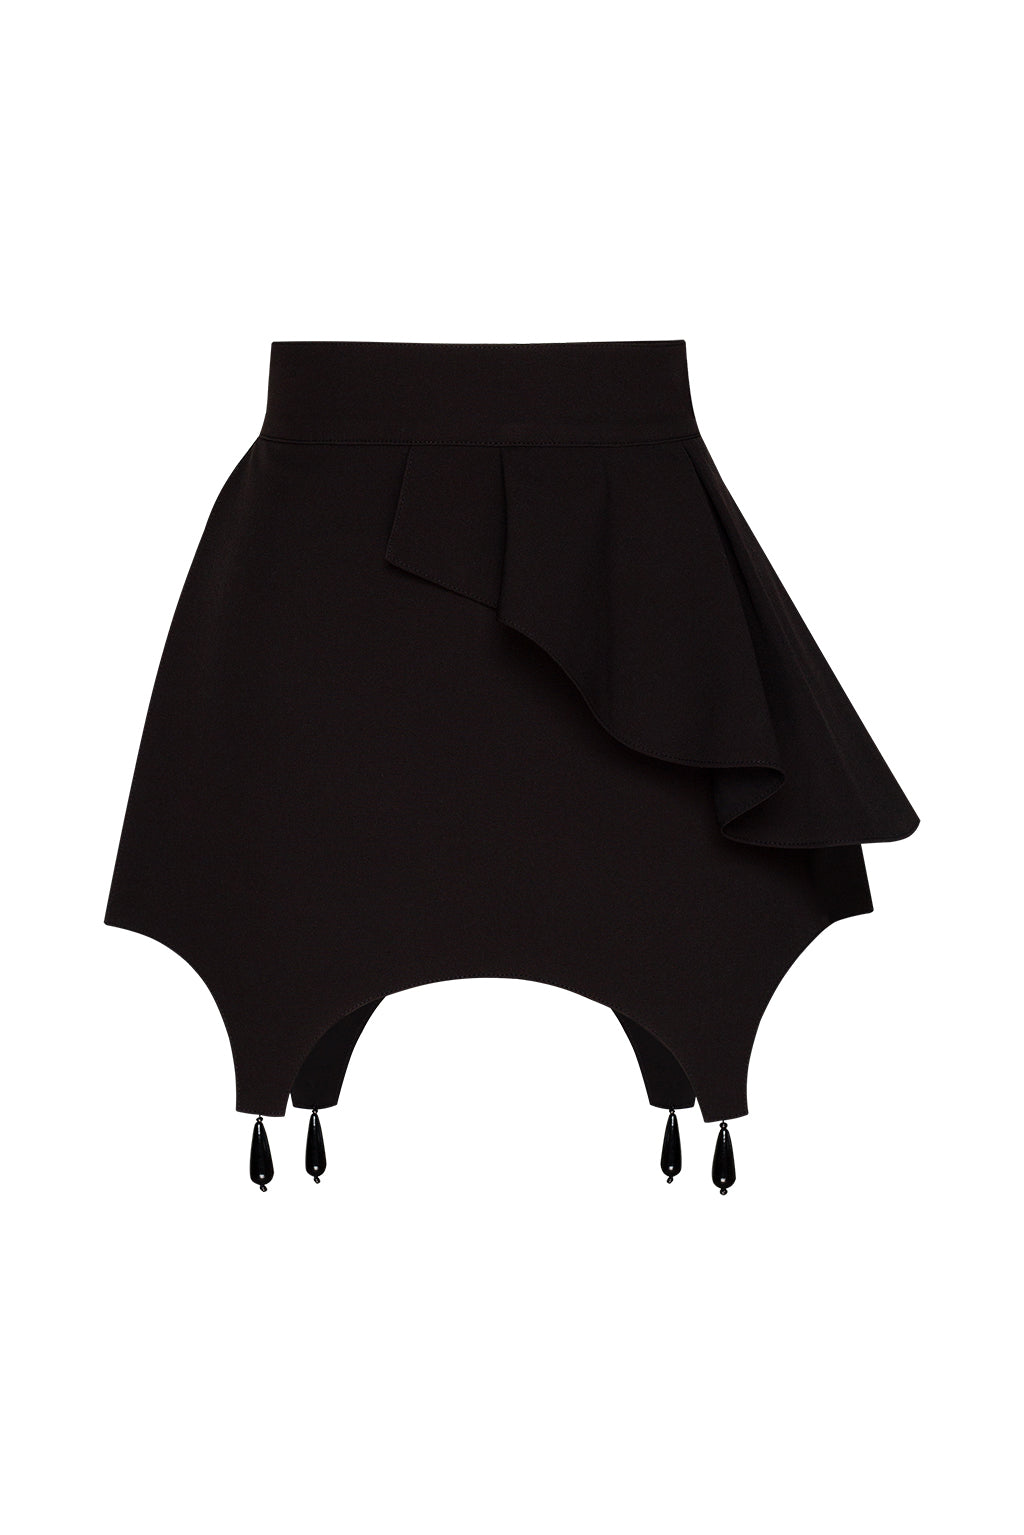 Black Bascque Skirt